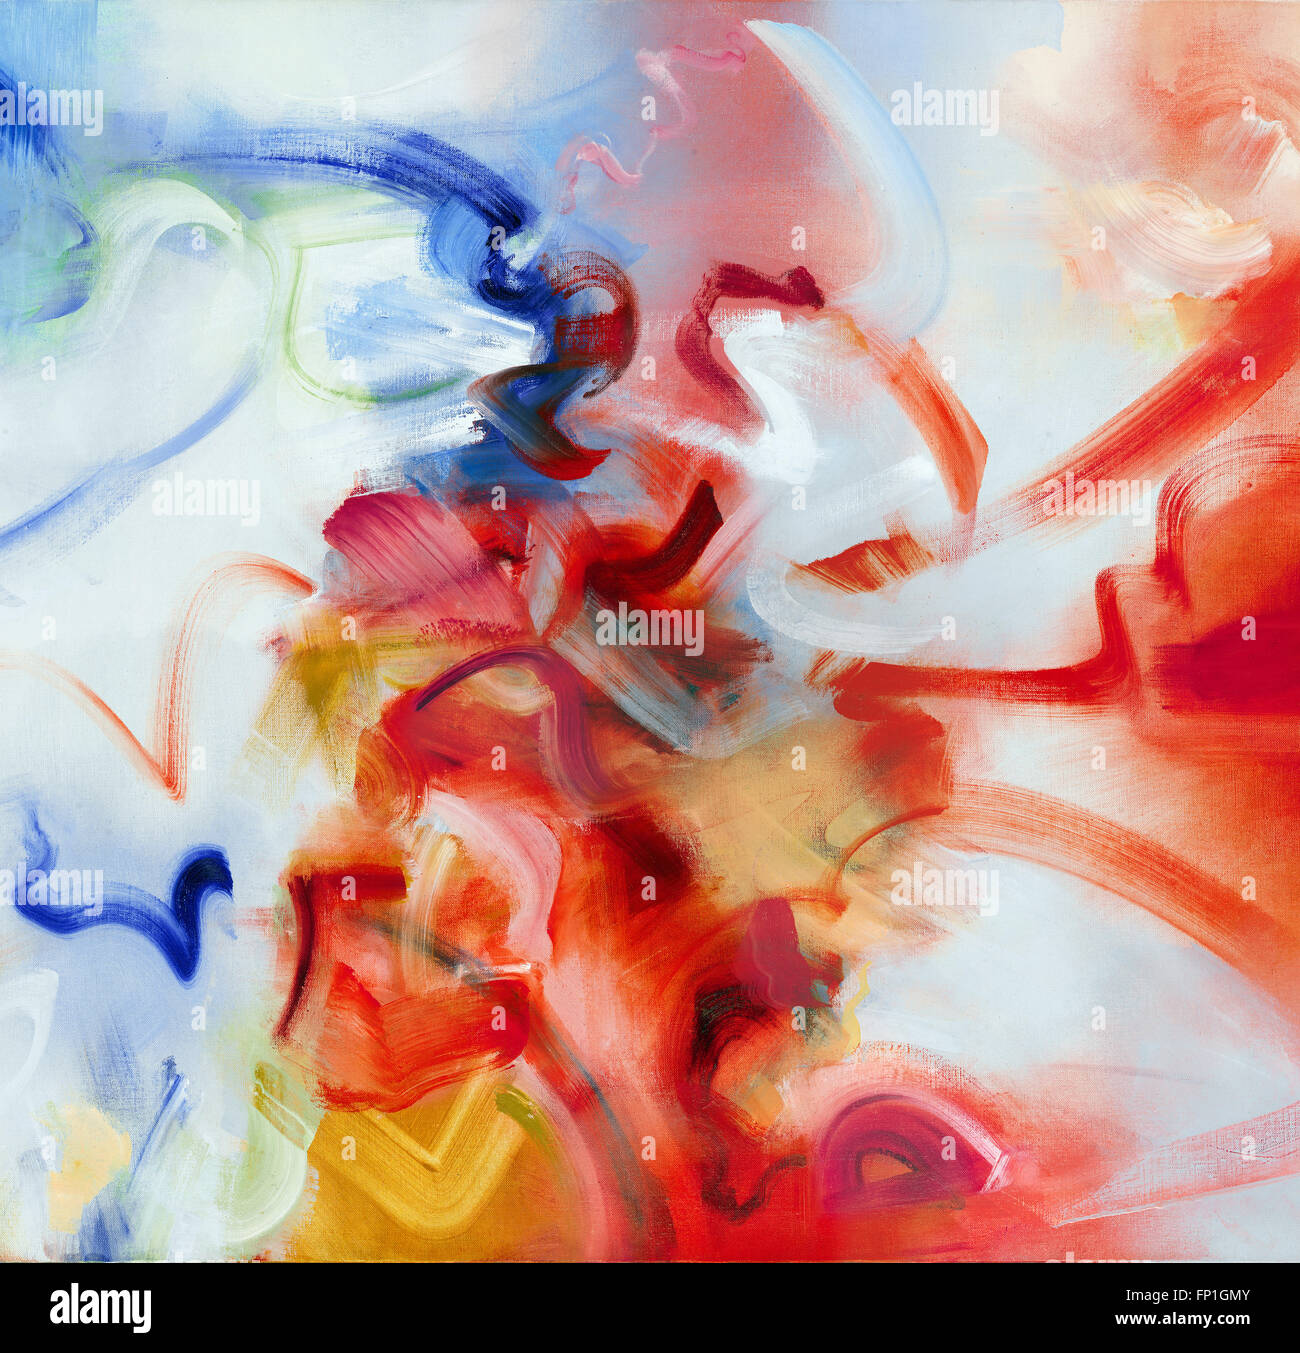 Reine Abstraktion in Ölen, minimale primäre Palette, ausdrucksstark und targeting Publikationen erstellt, wie z. B. Musik CD-Cover, Jazz. Stockfoto